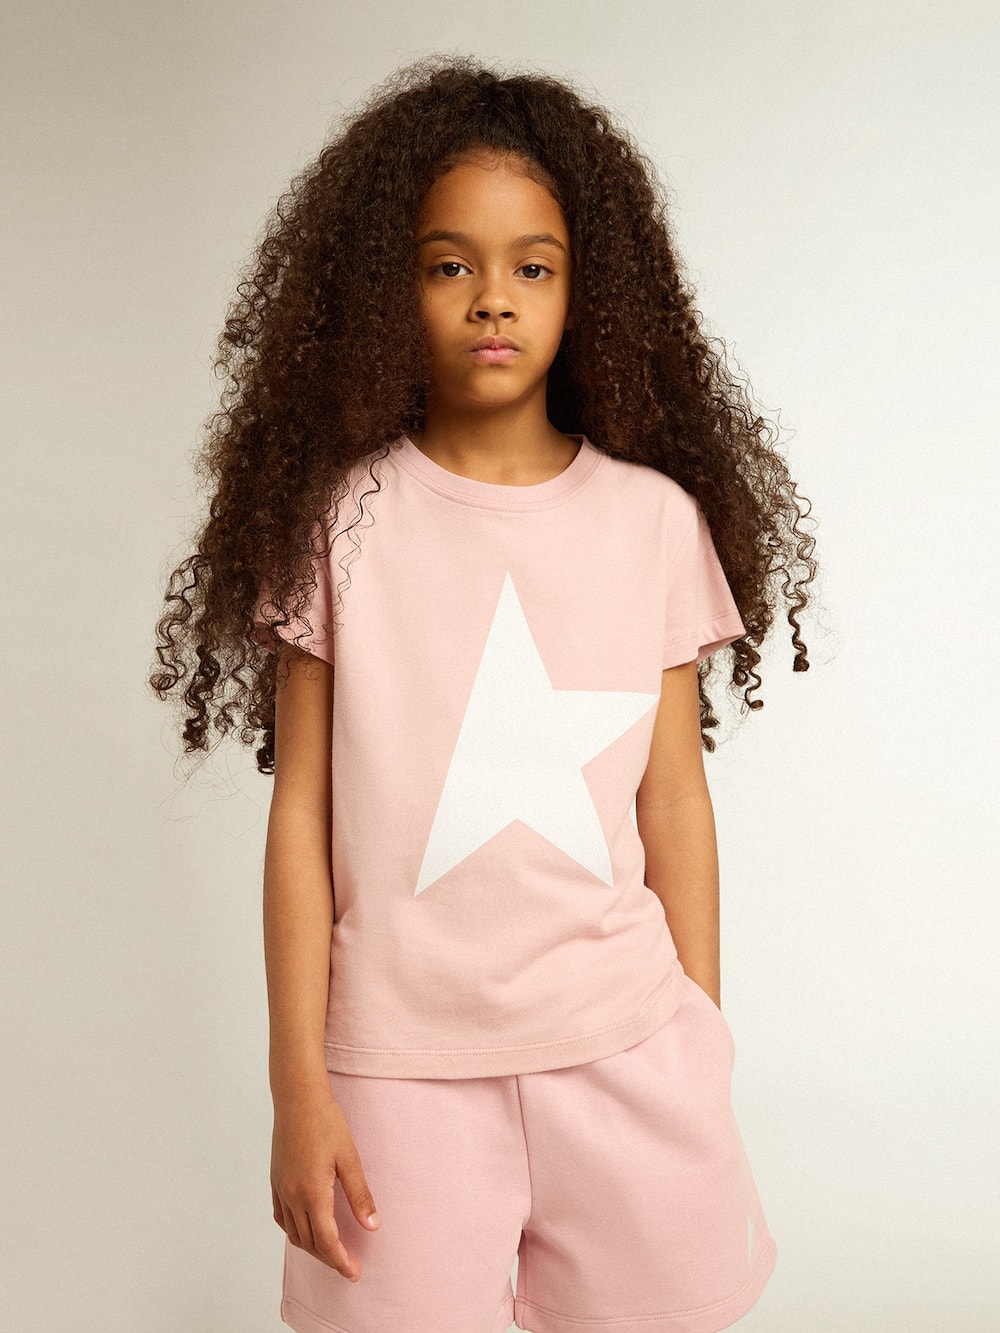 Golden Goose - T-shirt rosa da bambina con logo e maxi stella di colore bianco in 